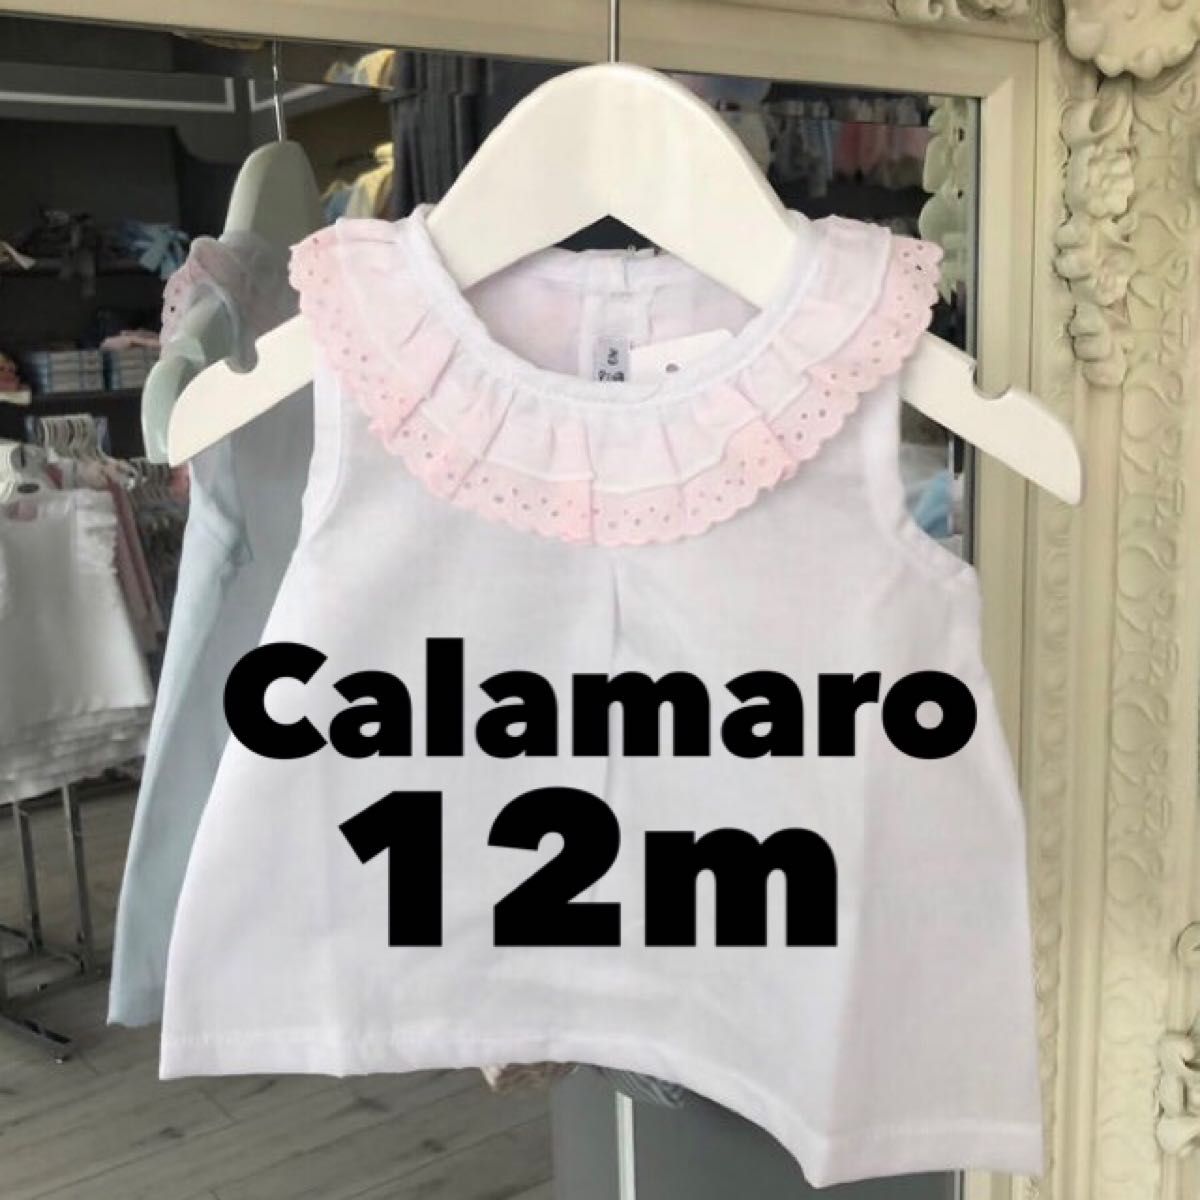 Calamaro カラマロ 12m ノースリーブ ブラウス 襟フリル ピンク 白 ホワイトブラウス 